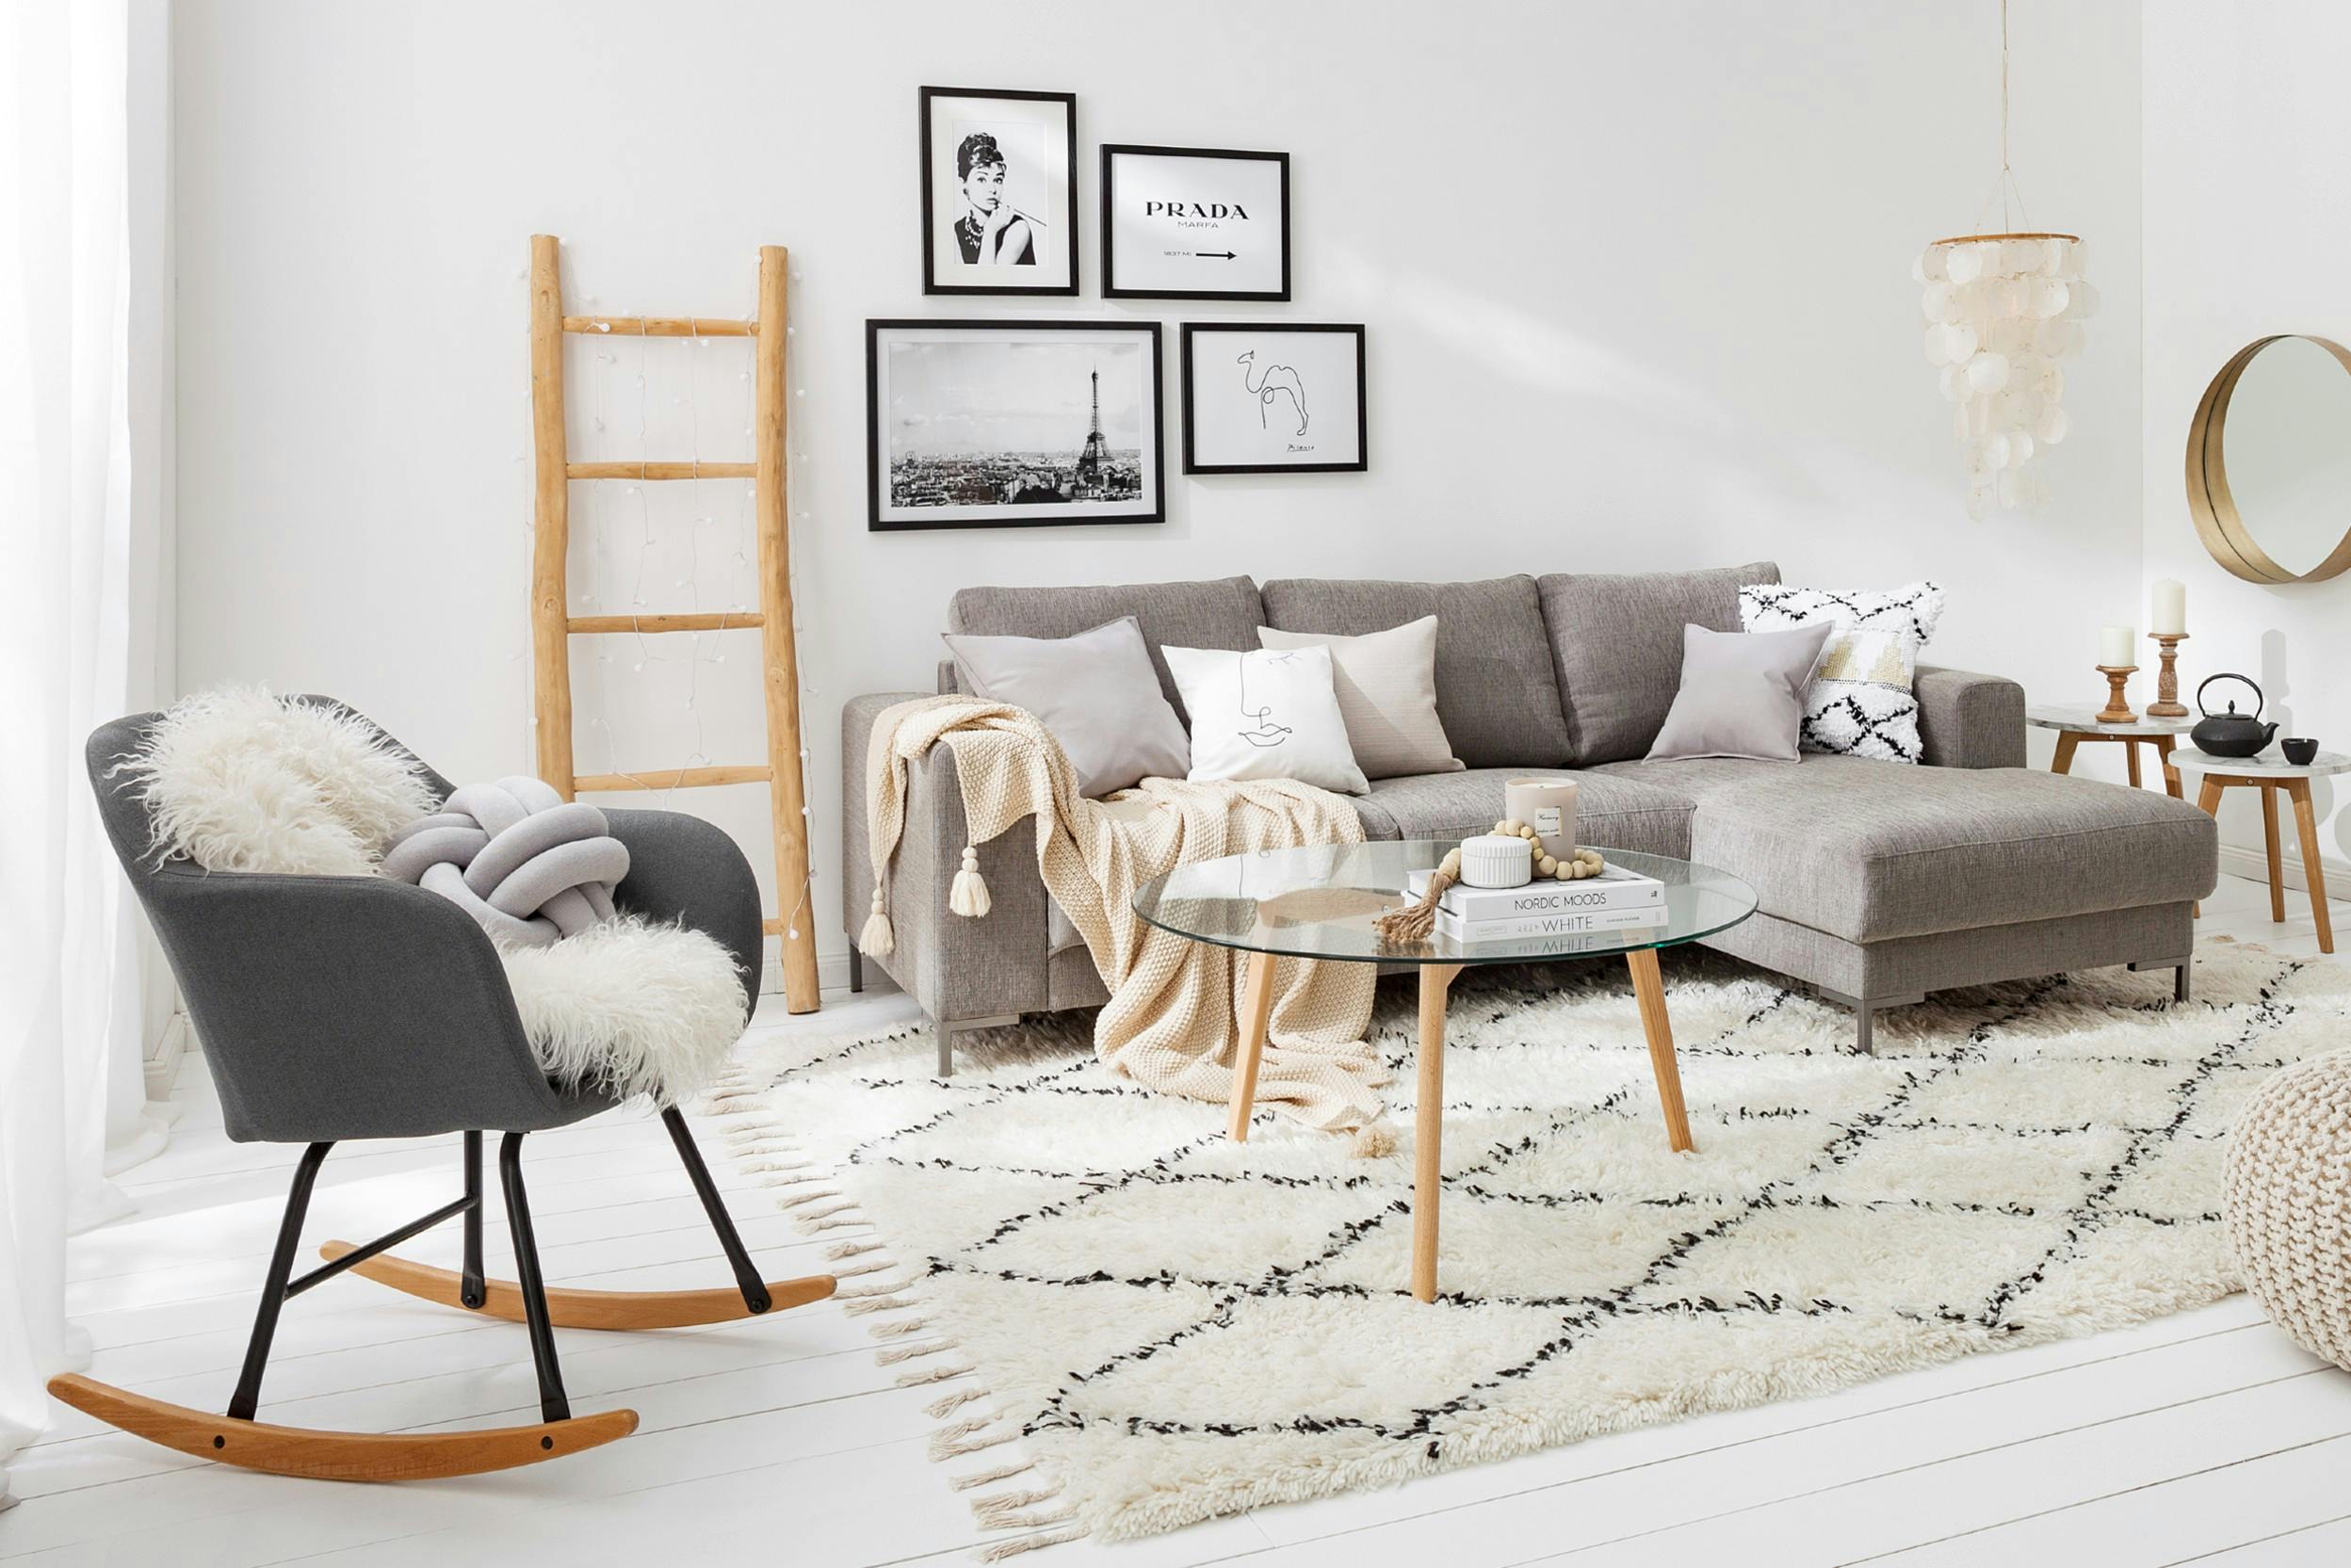 Wohnzimmer in Grau- und Cremetönen, ausgestattet mit Kissen, Teppichen, einer Decke und mehr